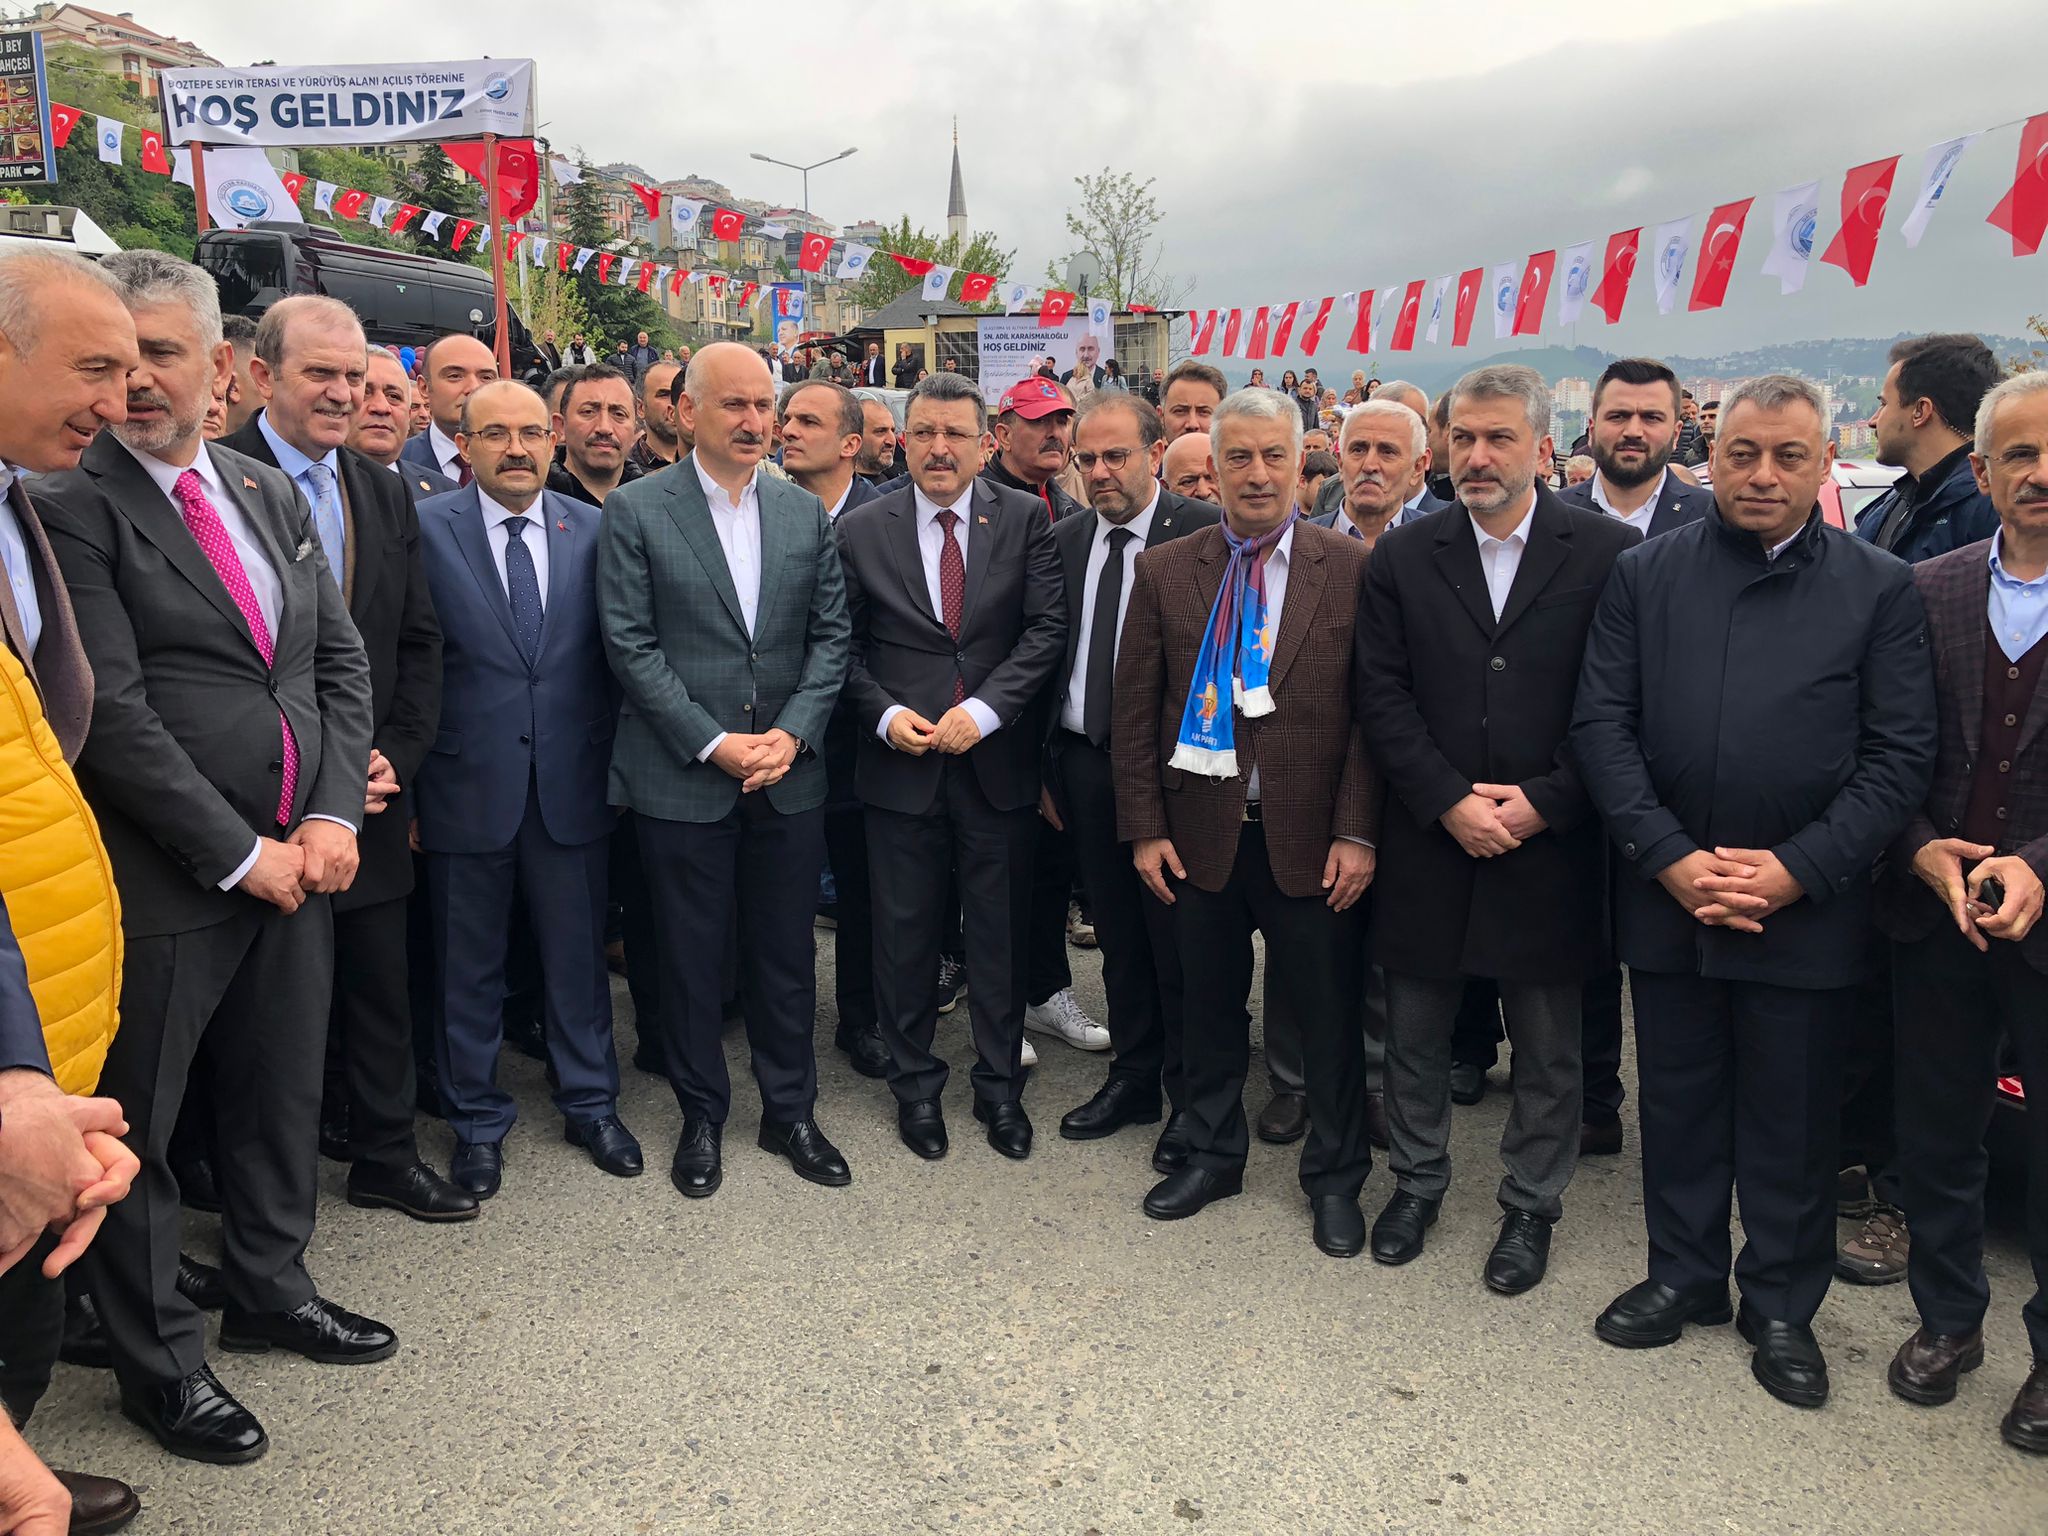 Trabzon Boztepe Seyir Terası açıldı